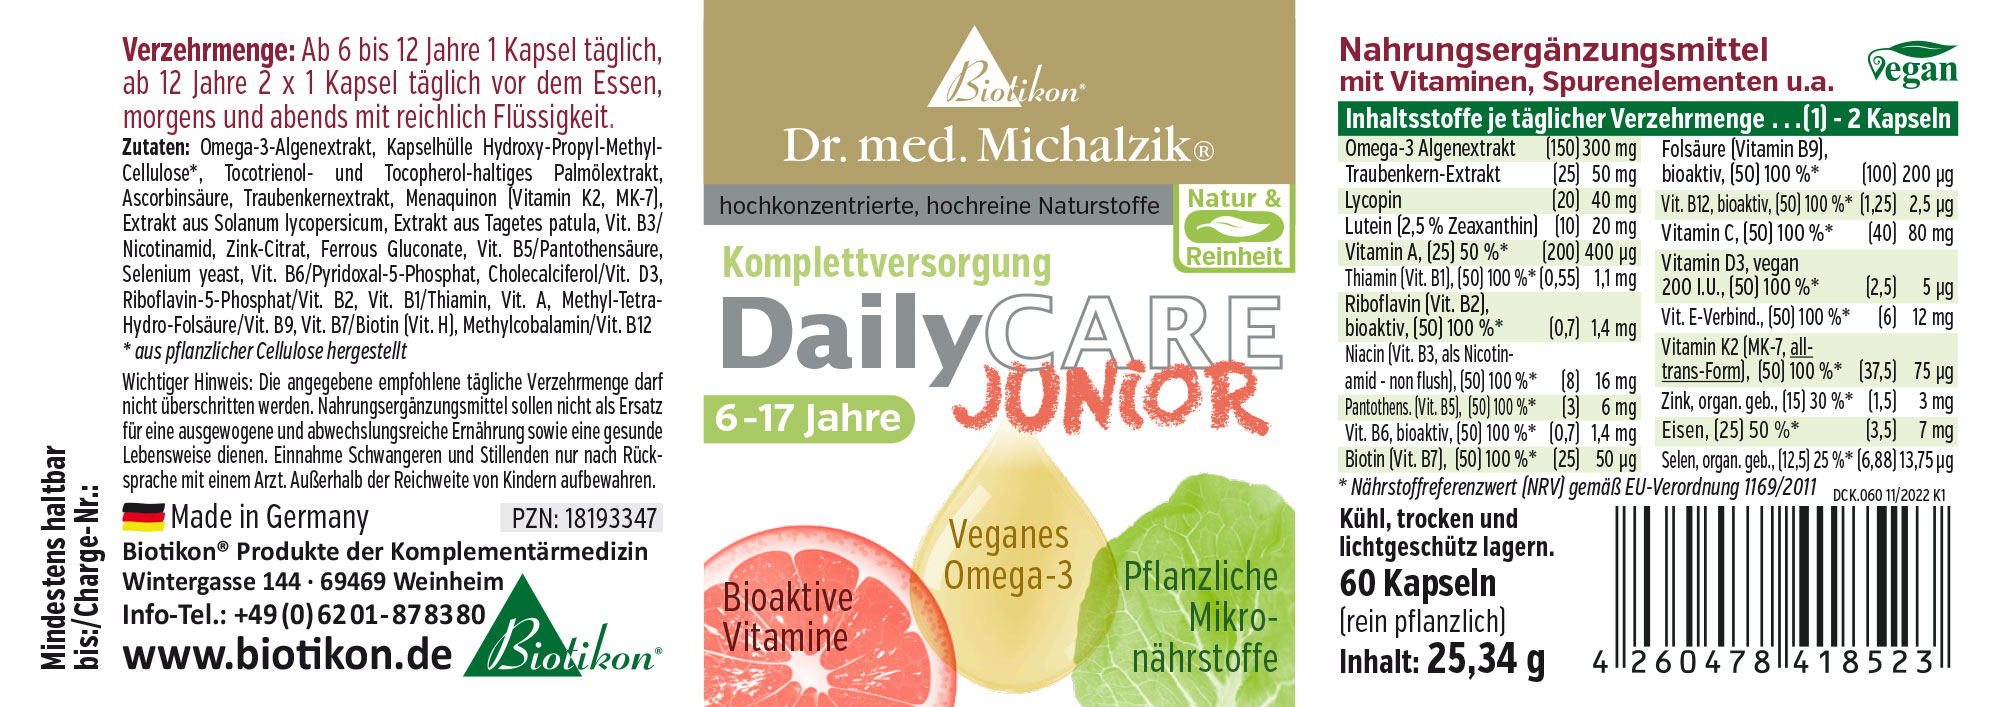 DailyCare Junior - Vitamine bioattive, omega-3 vegani + oligoelementi e sostanze vegetali di alta qualità